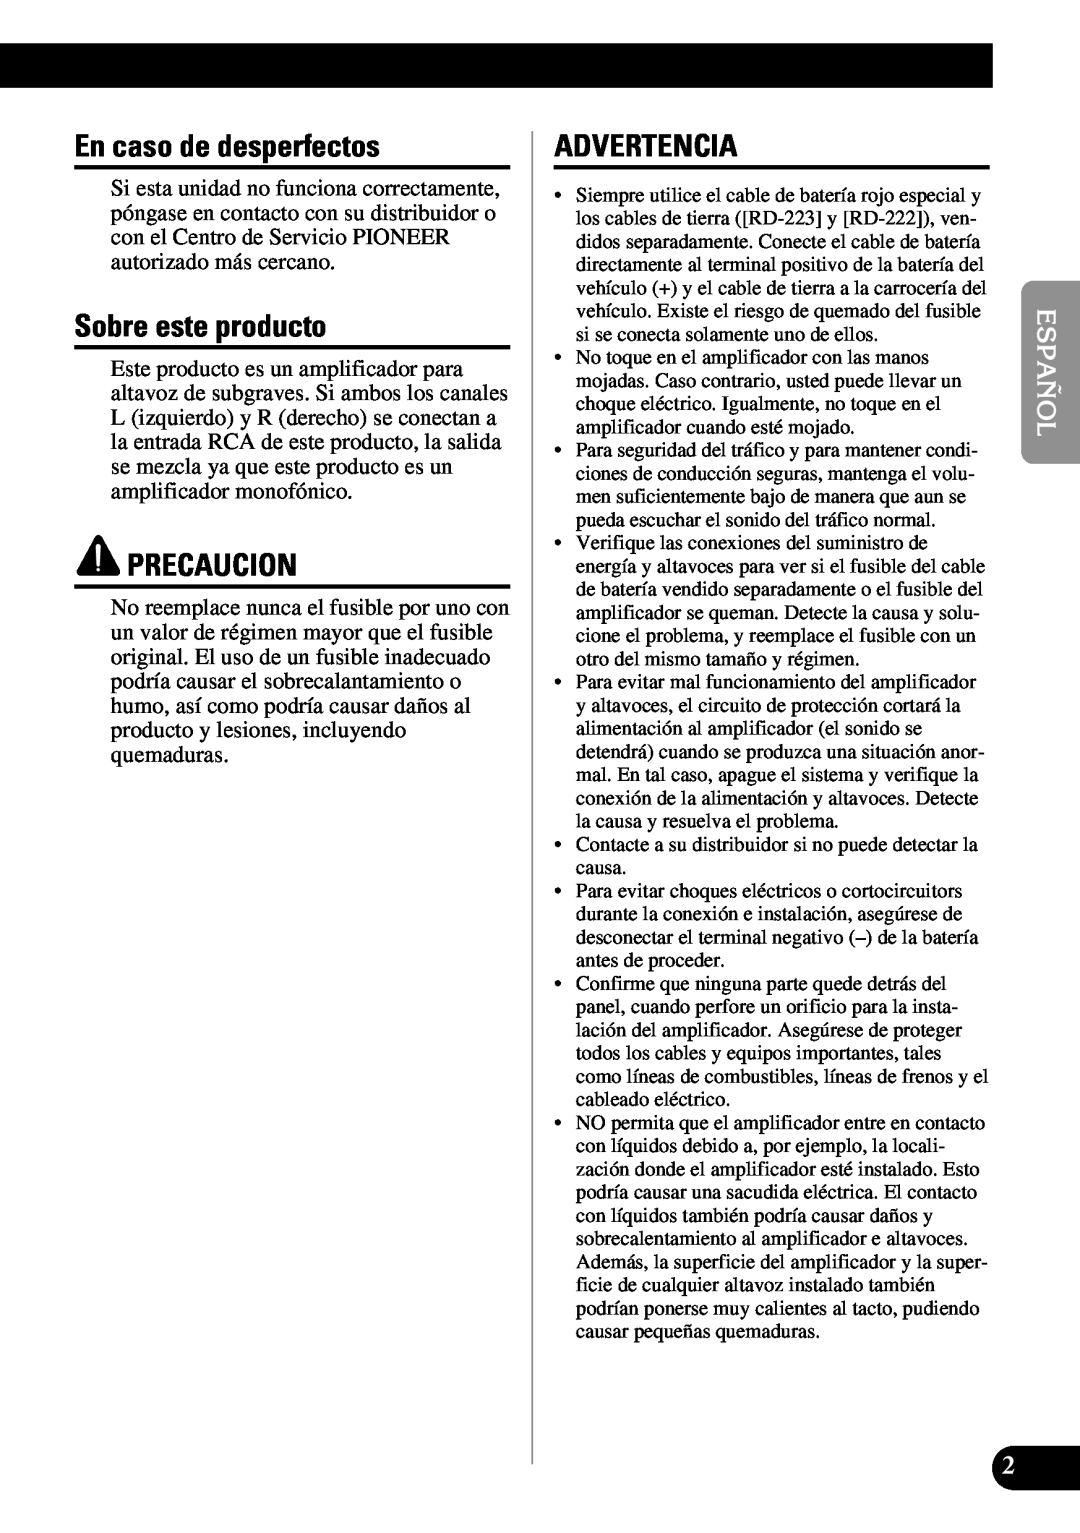 Pioneer PRS-D1100M owner manual En caso de desperfectos, Sobre este producto, Precaucion, Advertencia 